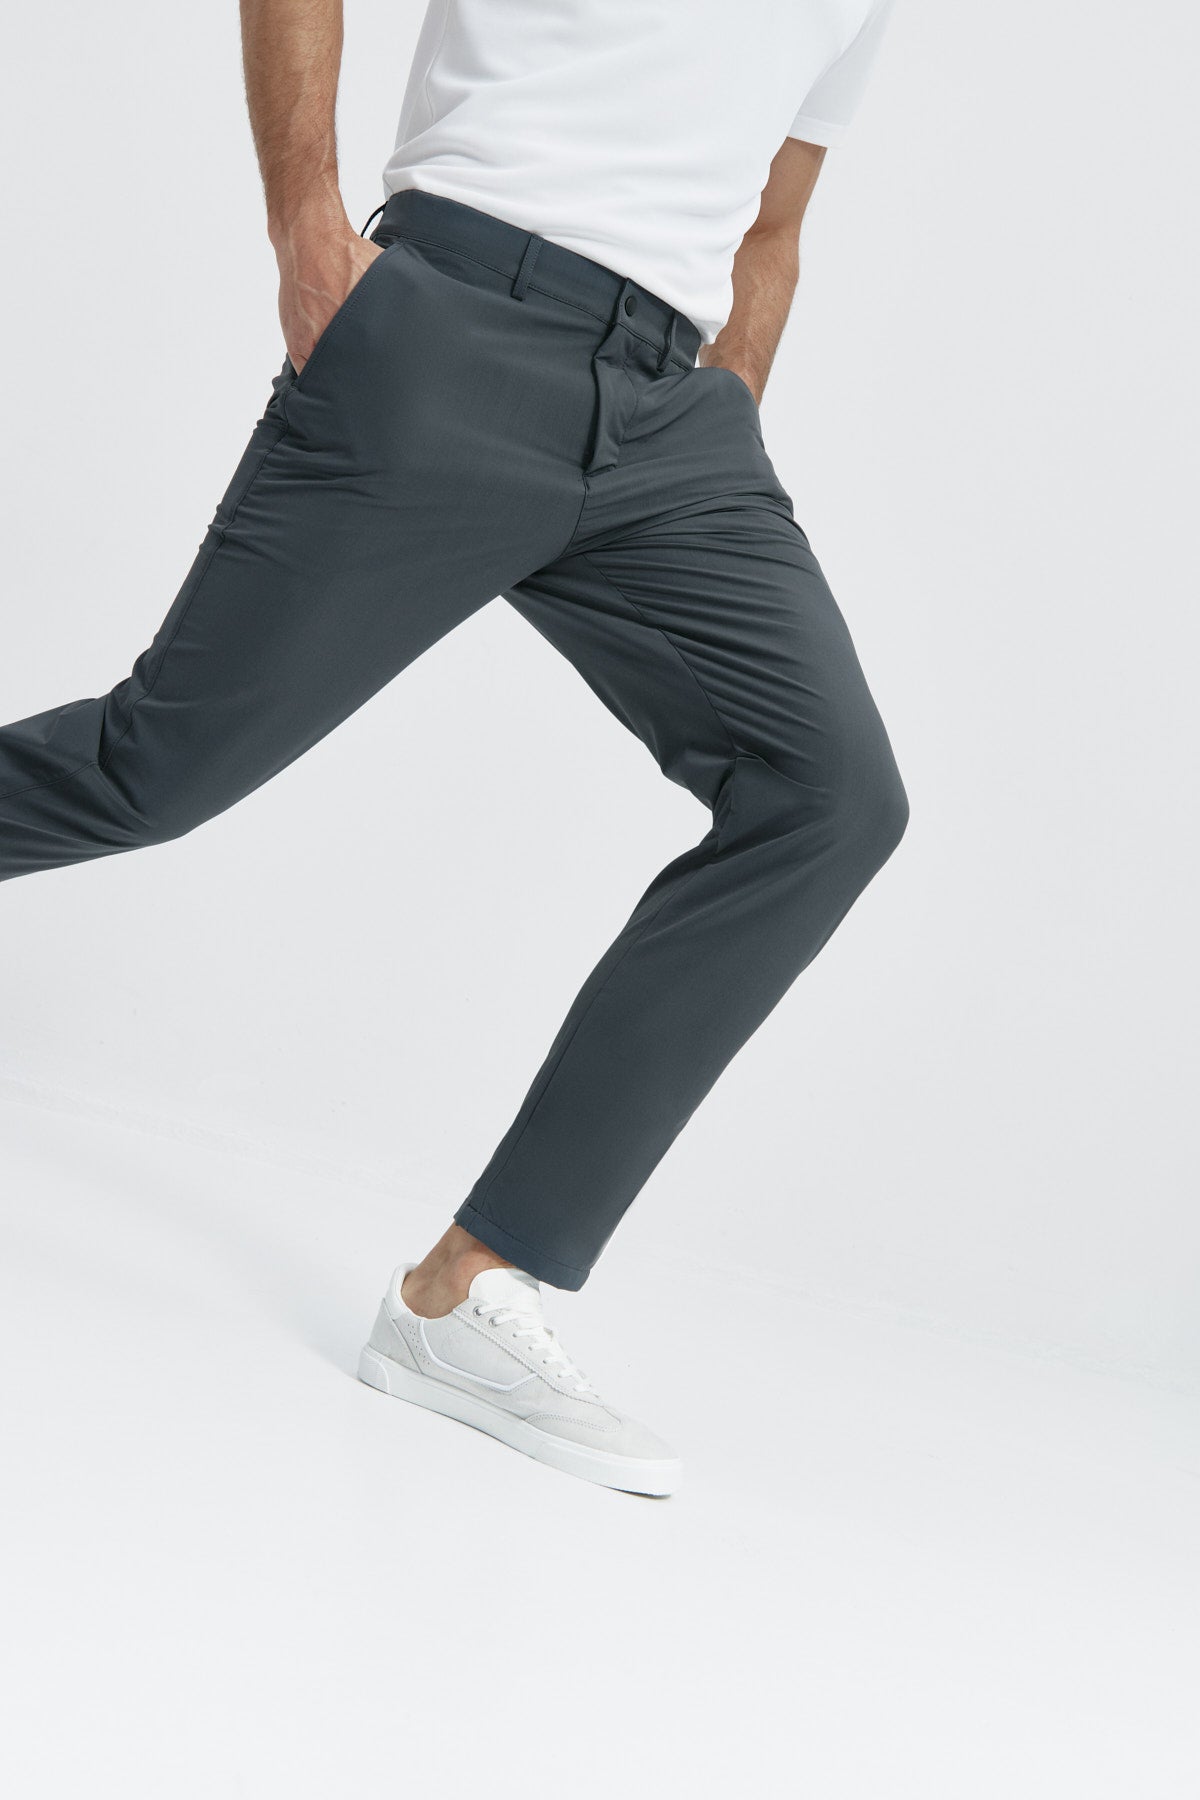 Pantalón para hombre gris: Pantalón chino regular gris para hombre con tecnología termorreguladora Coolmax. Foto flexibilidad.